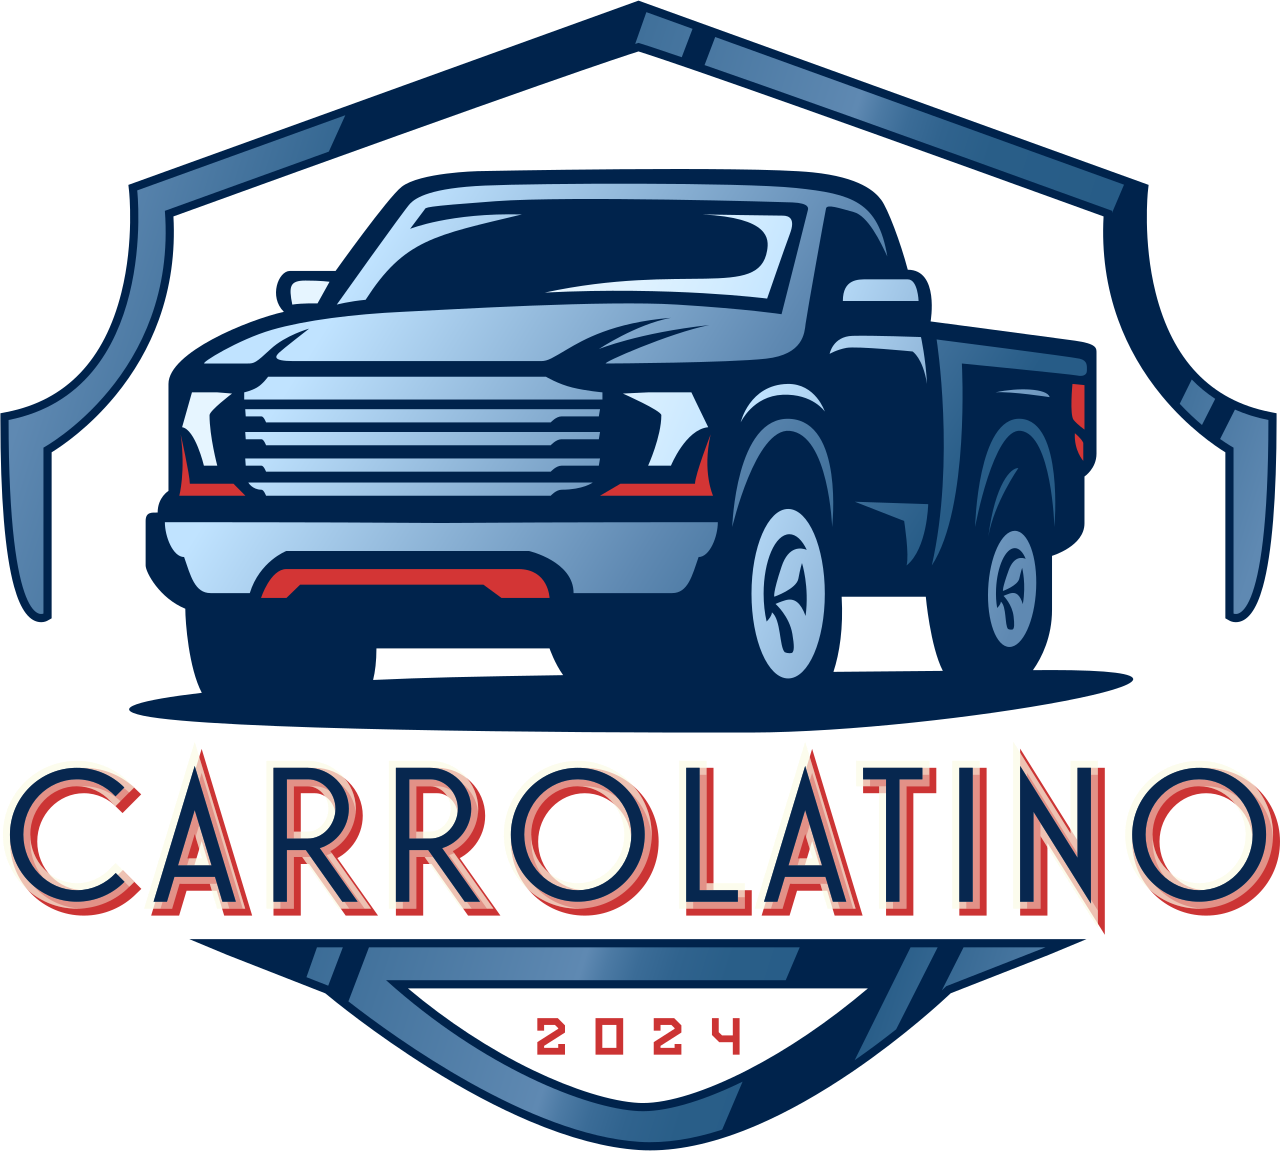 CARROLATINO.com